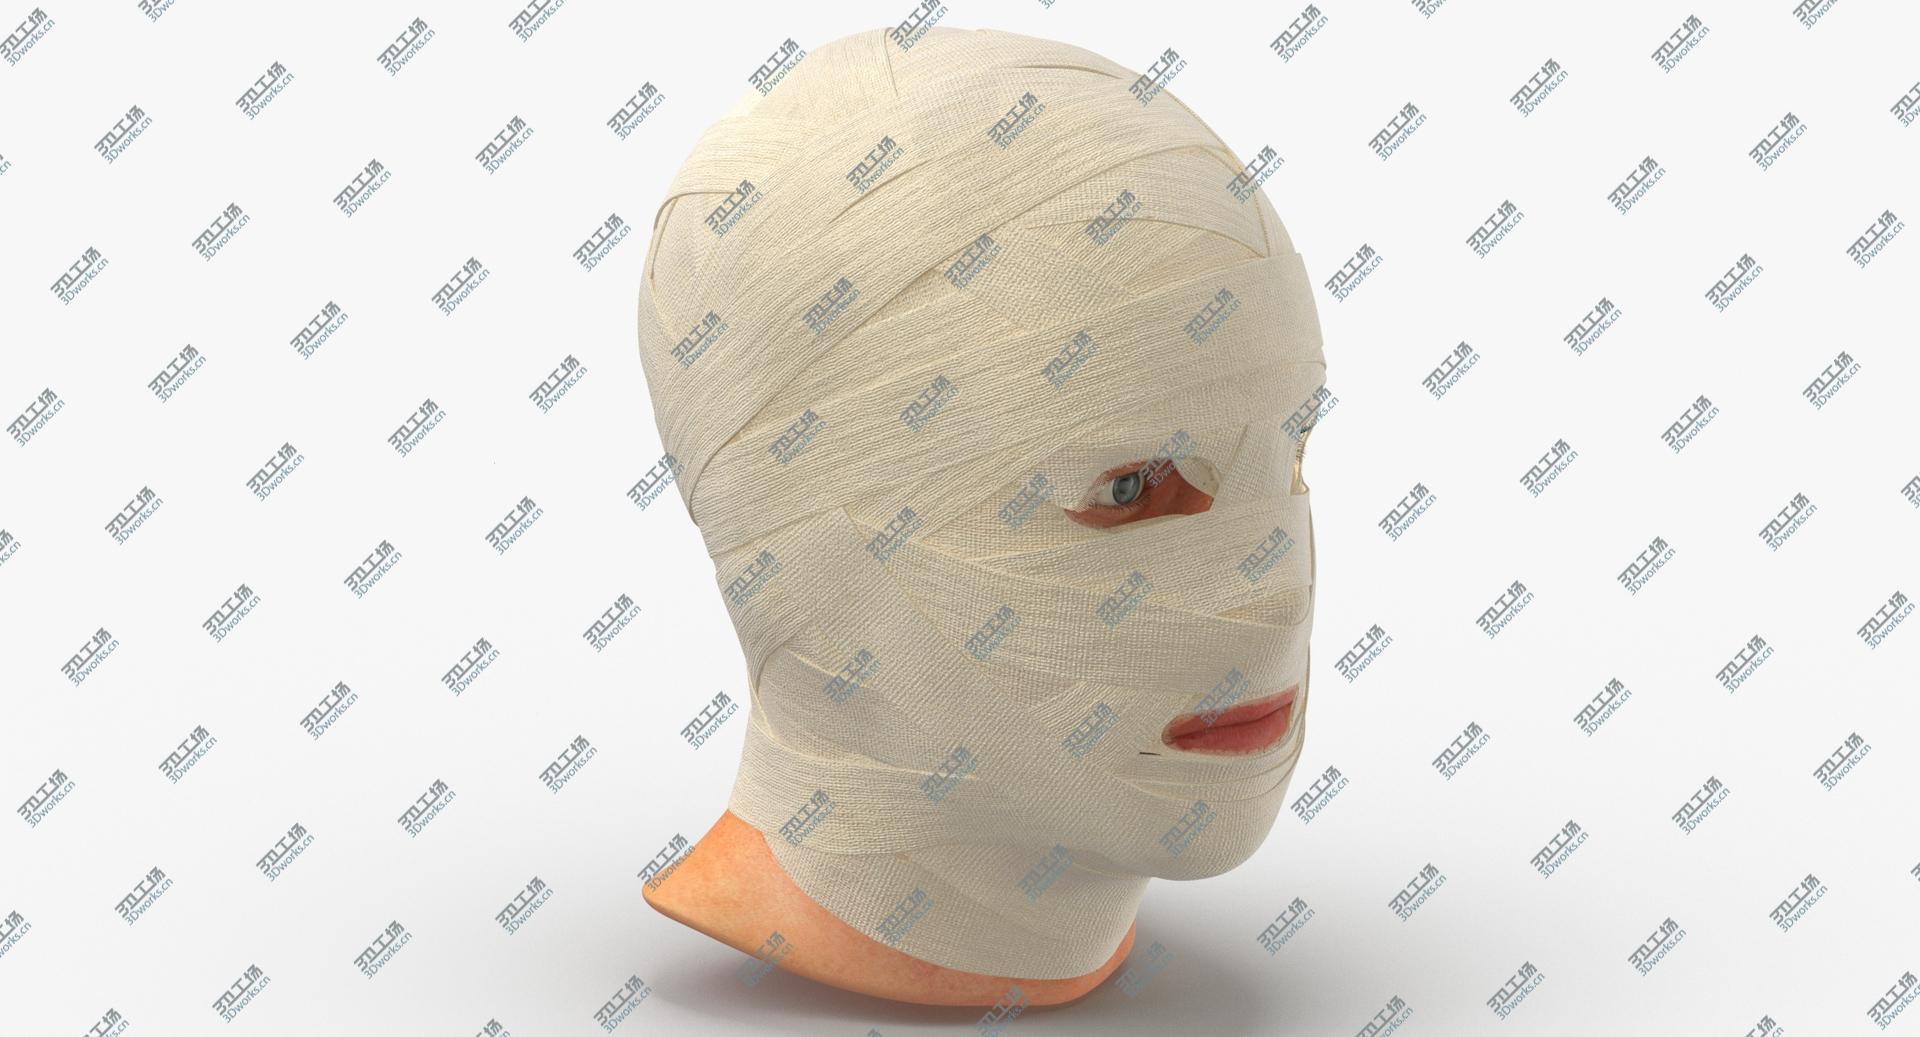 images/goods_img/202105071/3D Bandaged Head/1.jpg